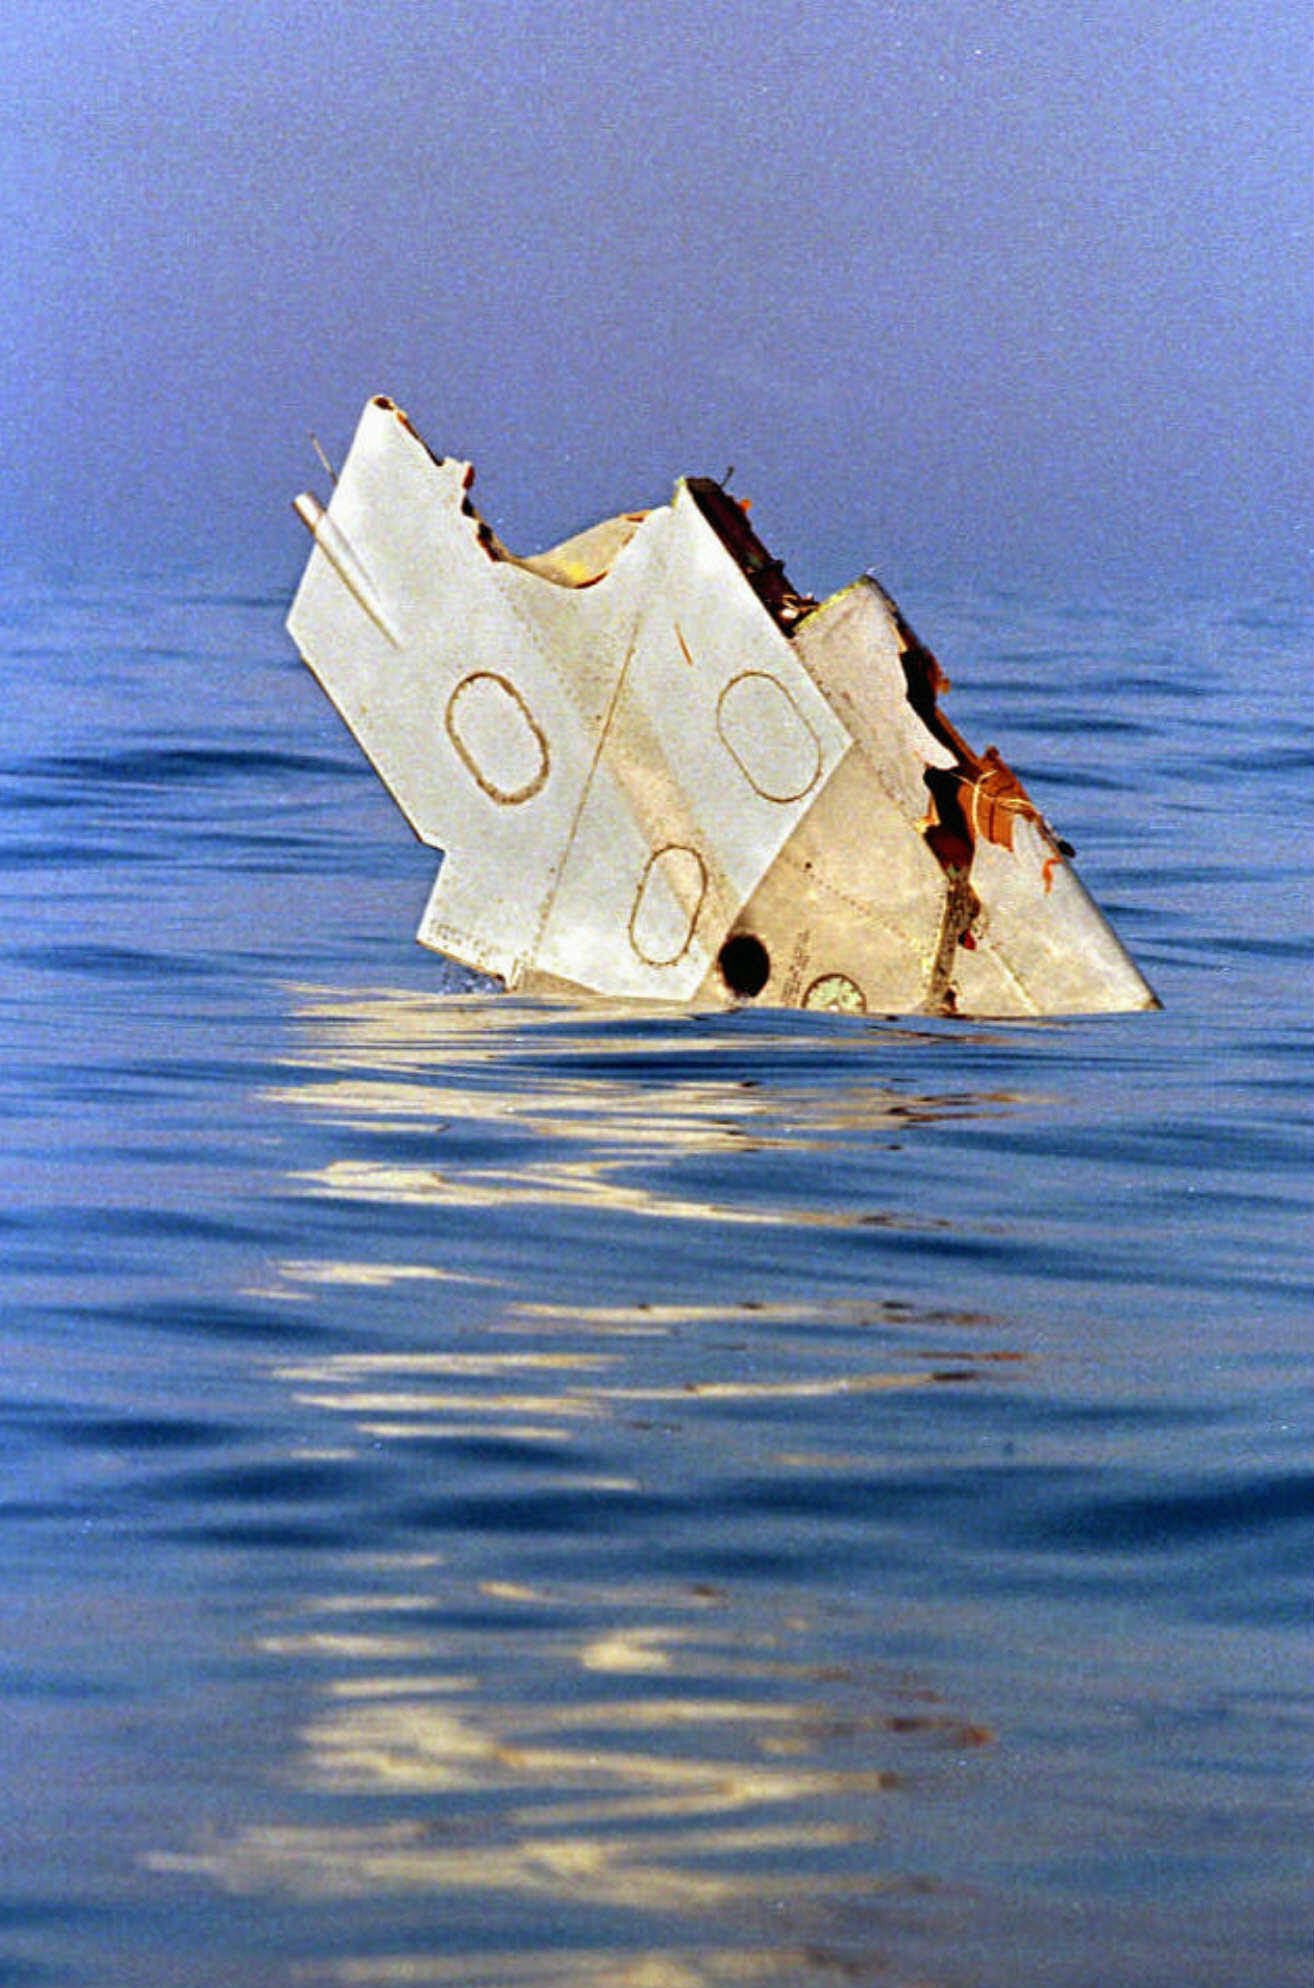 TWA Flight 800 wreckage: A look inside the plane's fuselage